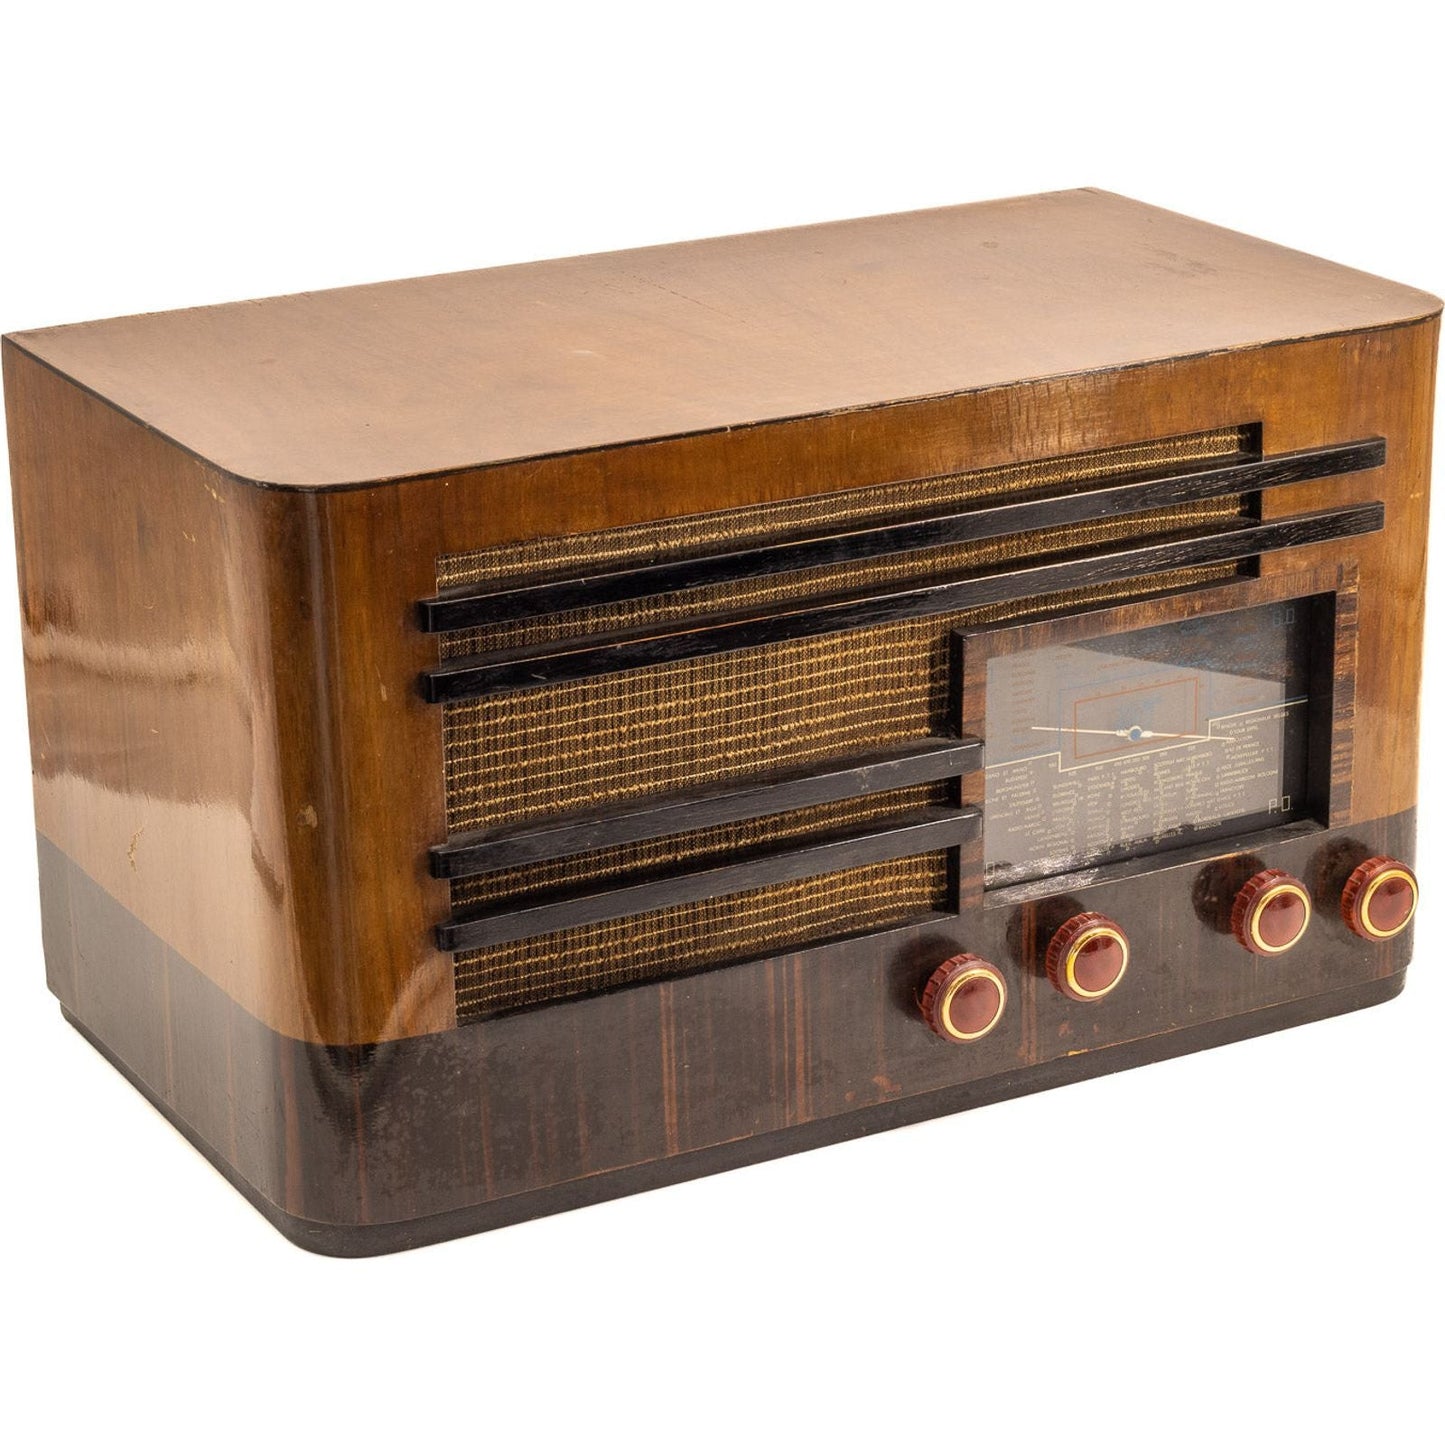 Radio Bluetooth Point Bleu Vintage 40’S enceinte connectée française haut de gamme absolument prodige radio vintage